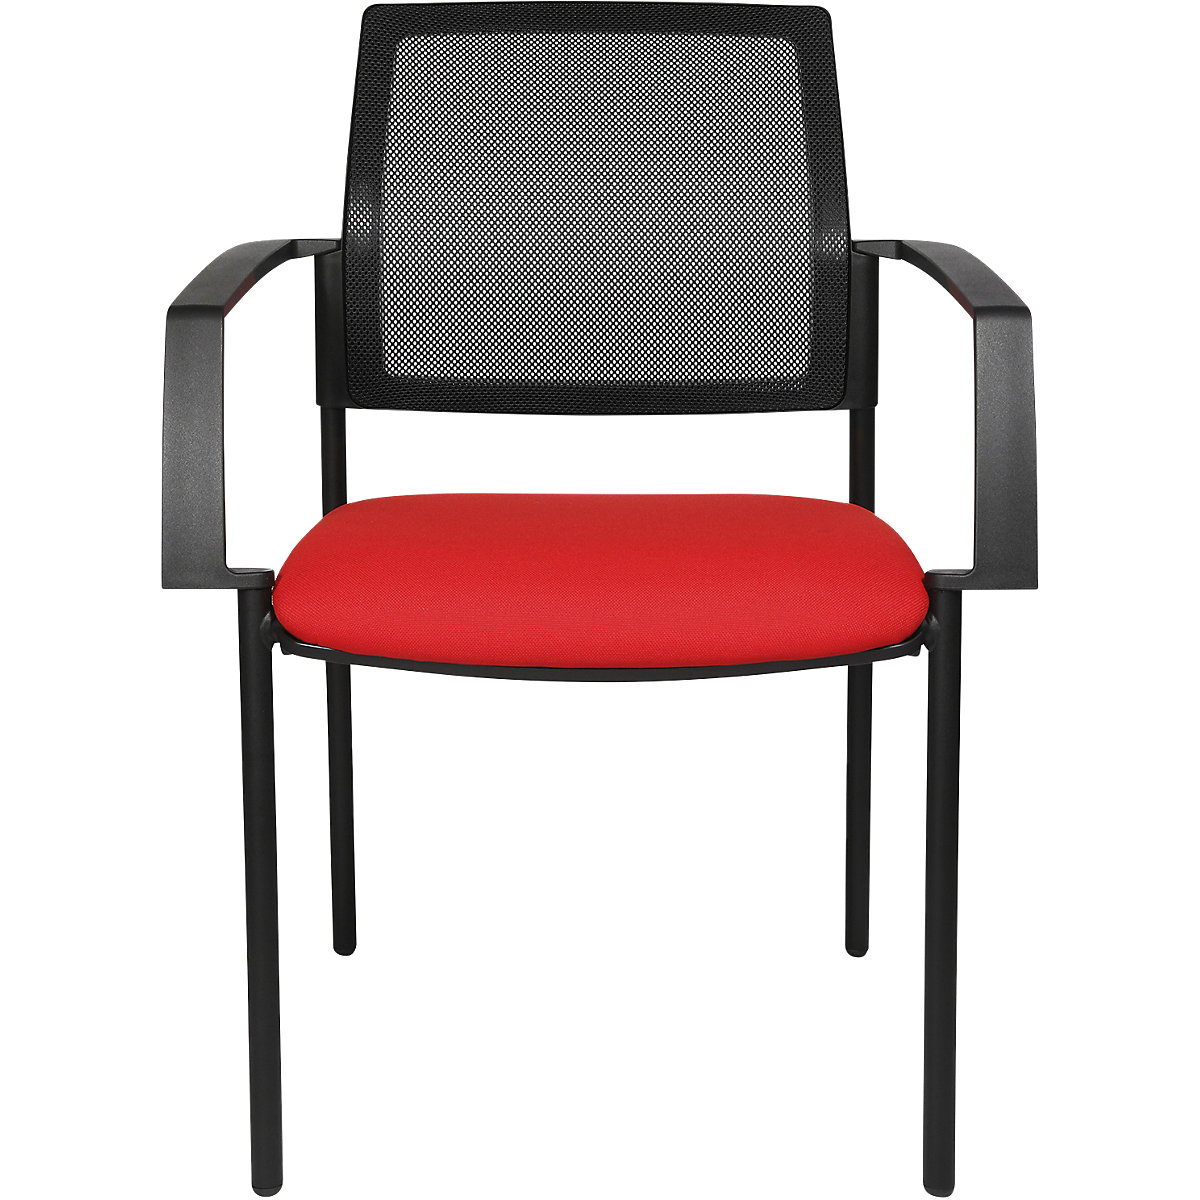 Síťovaná stohovací židle – Topstar, 4 nohy, bal.j. 2 ks, červený sedák, černý podstavec-3